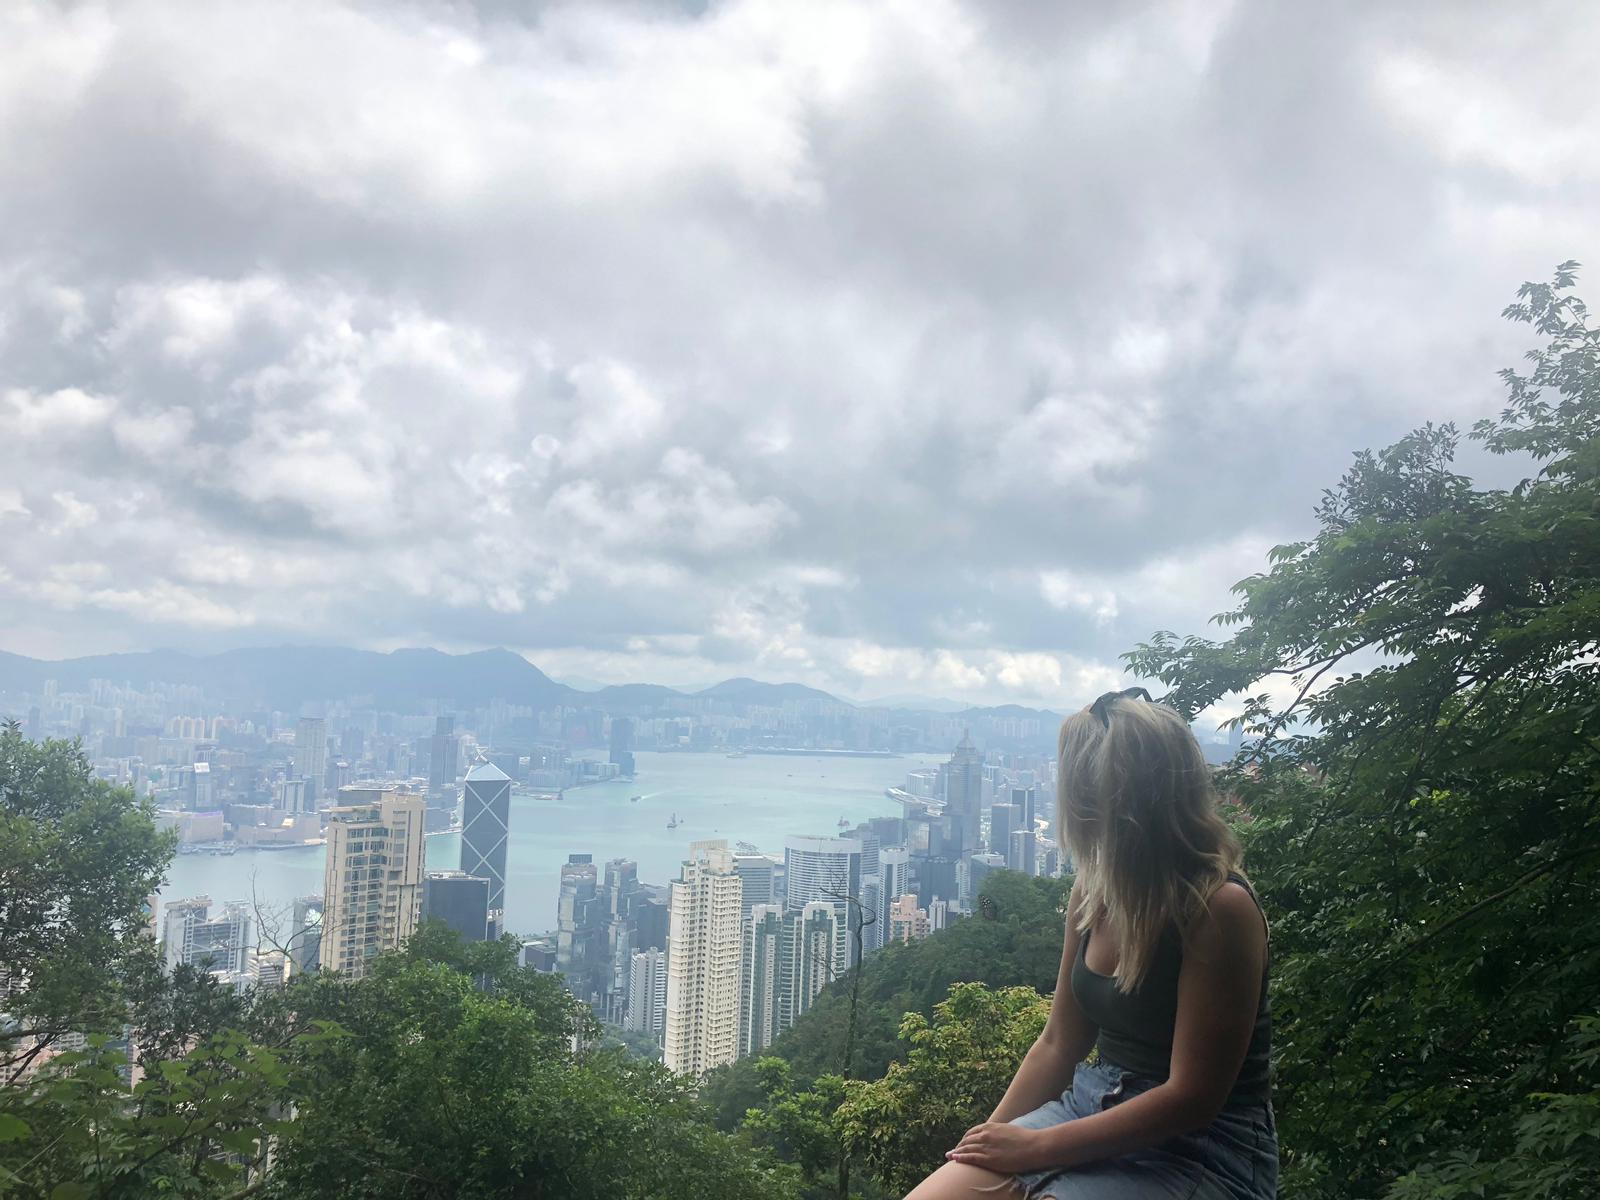 Laura at Victoria Peak, Hong Kong